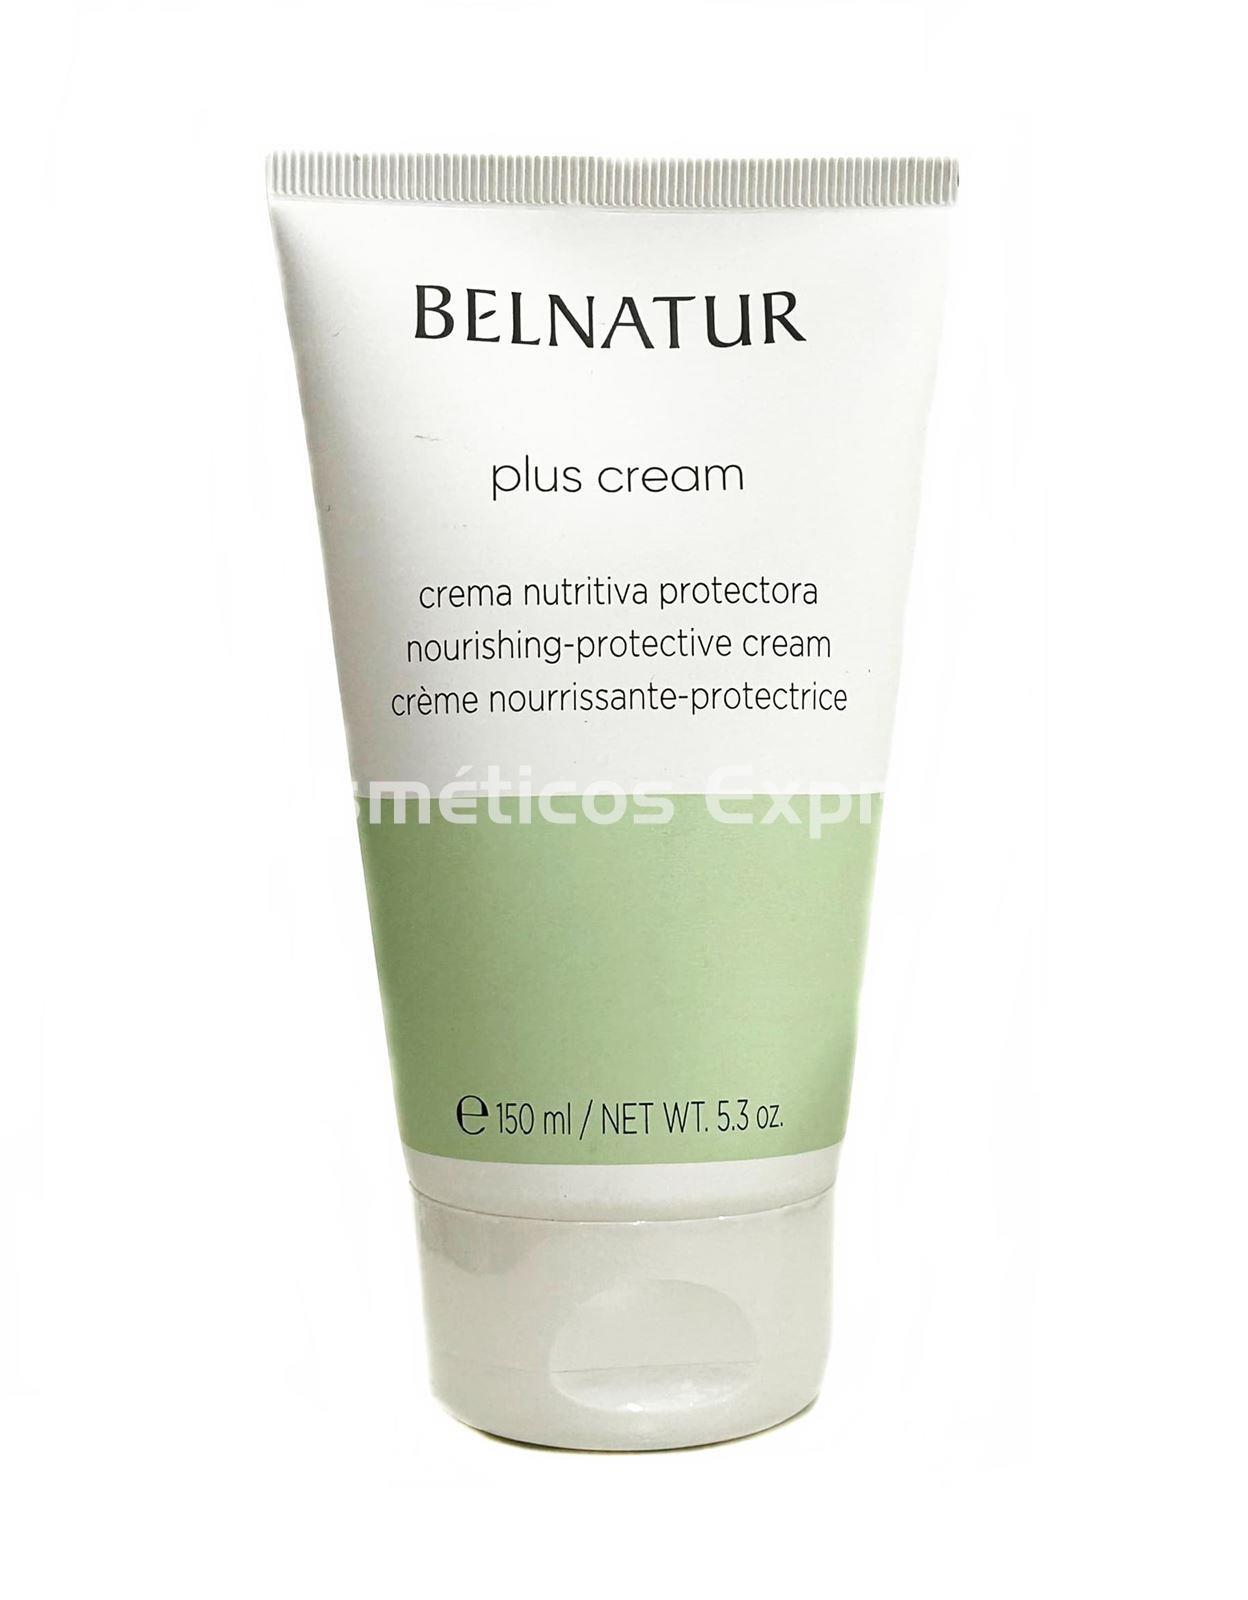 Belnatur Crema Nutritiva PLUS 150 ml. - Imagen 1